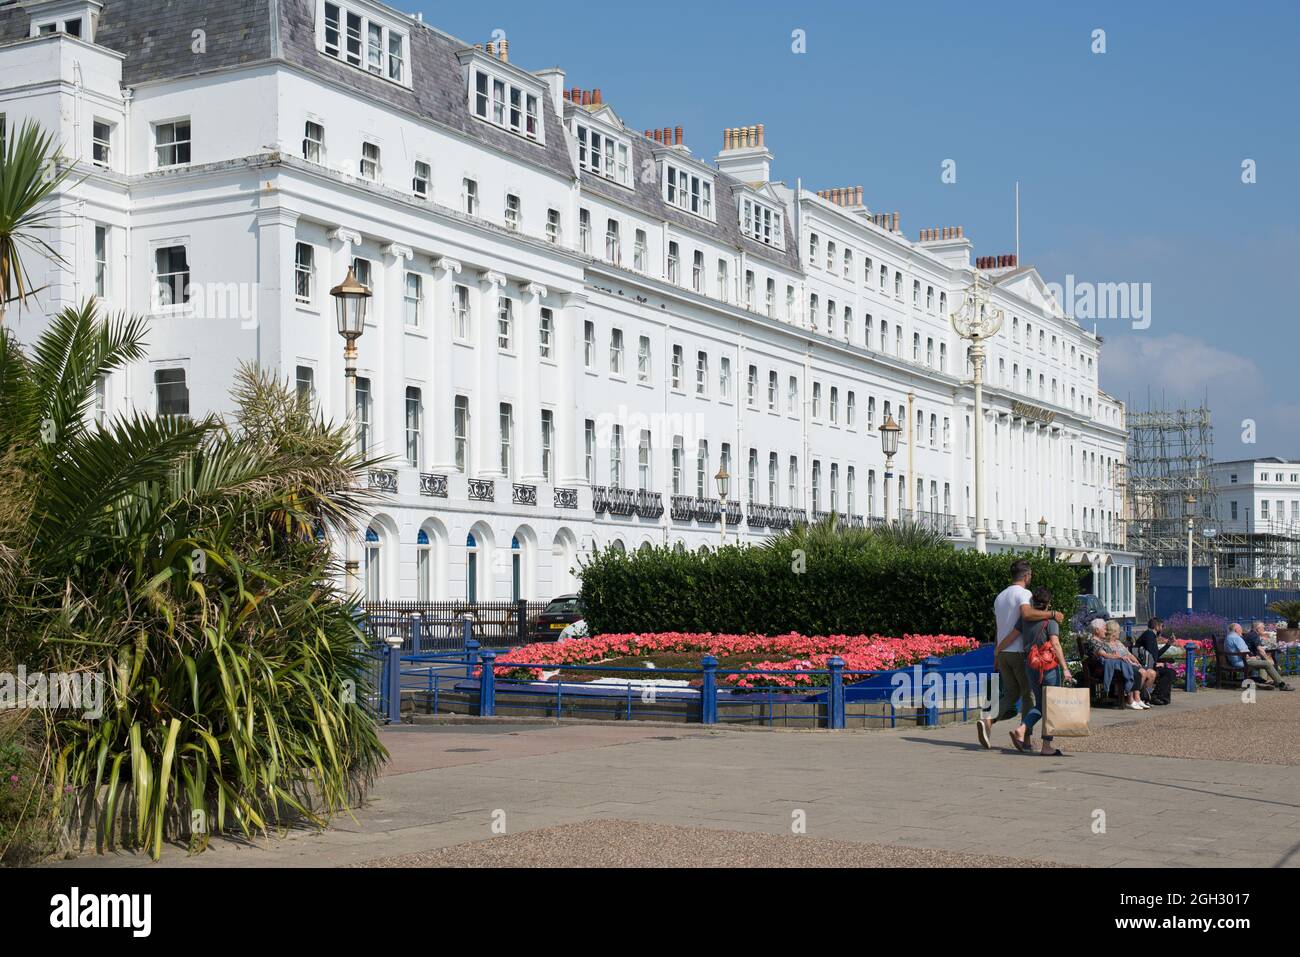 Burlington Hotel Grand Parade Eastbourne Stock Photo